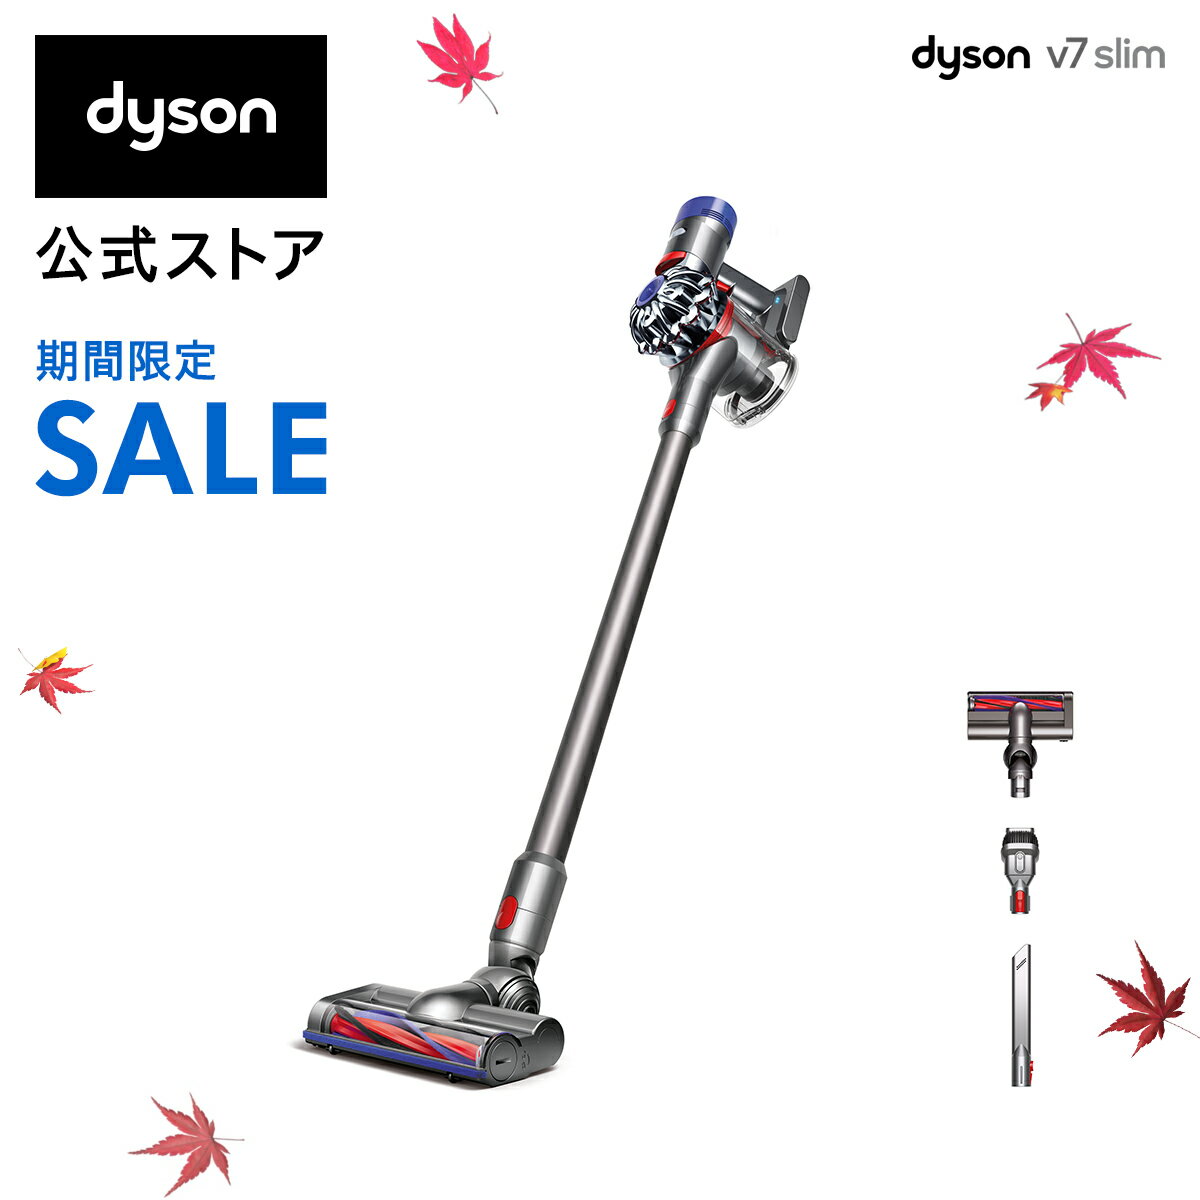 21%OFF【在庫限り】30日11:59amまで！ダイソン Dyson V7 Slim サイクロン式 コードレス掃除機 dyson SV11SLM 軽量モデルの写真